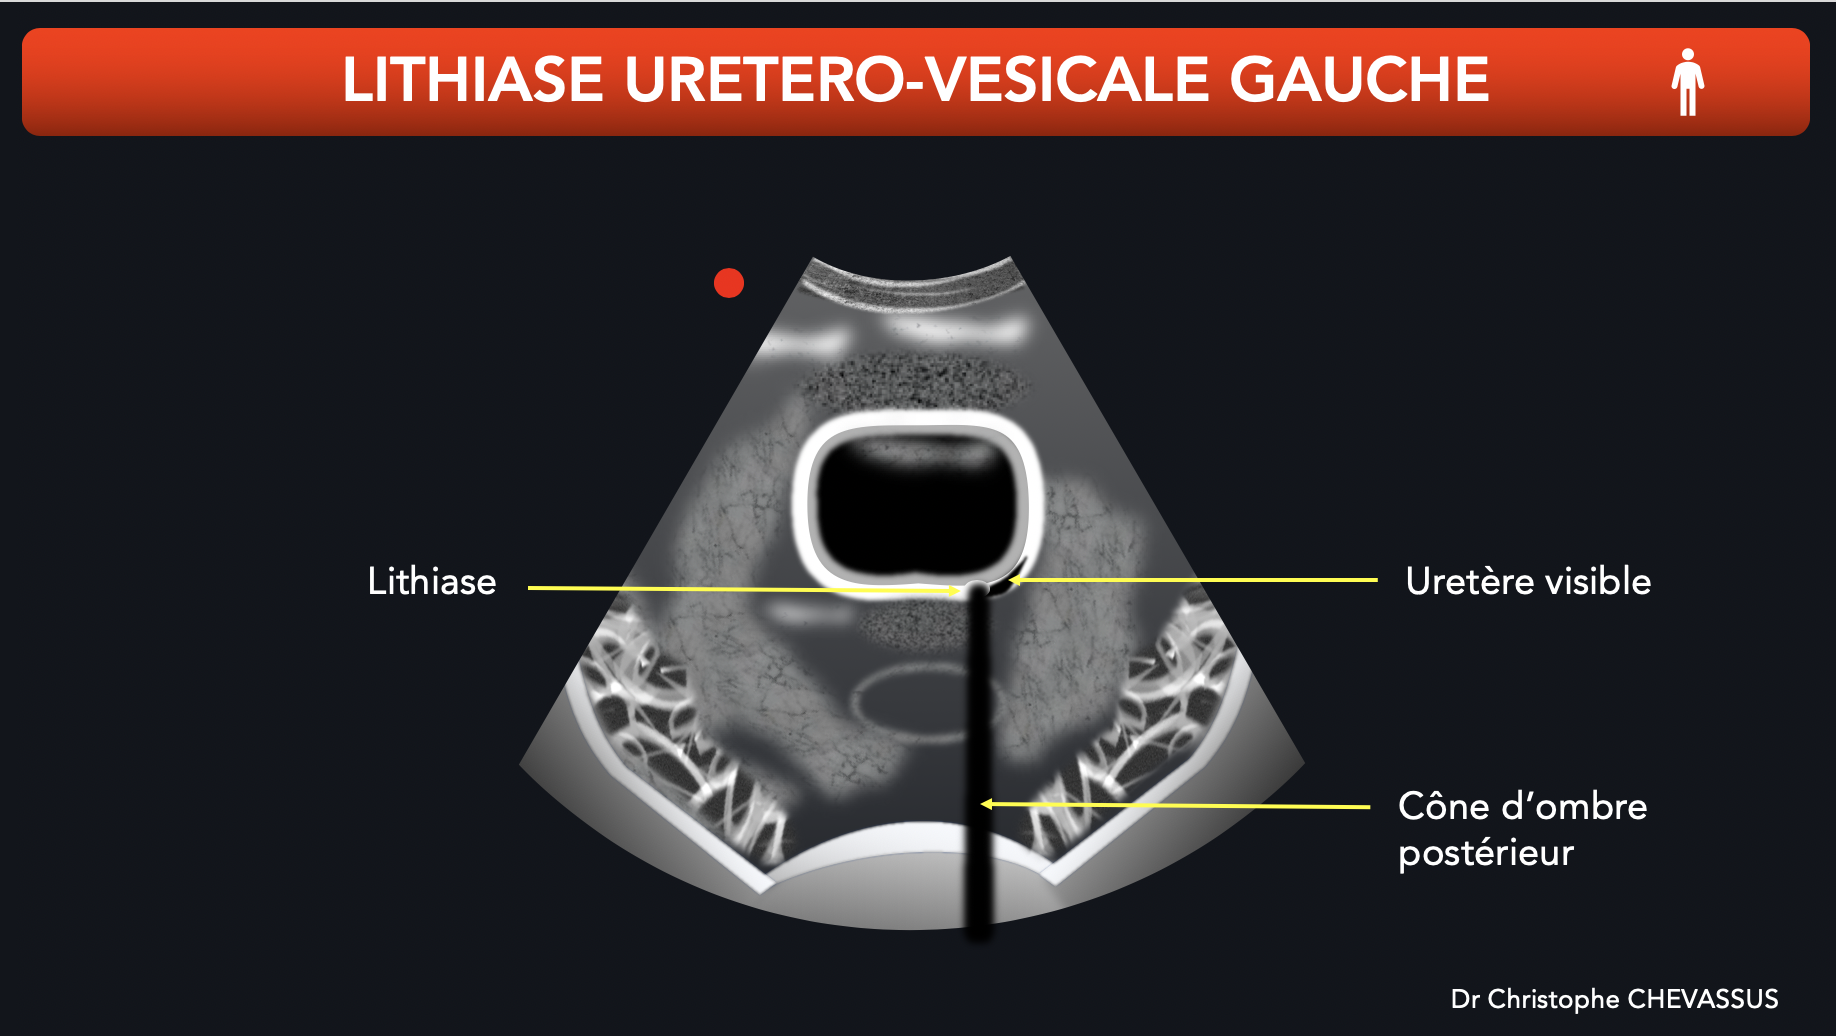 Lithiase urétéro-vésicale